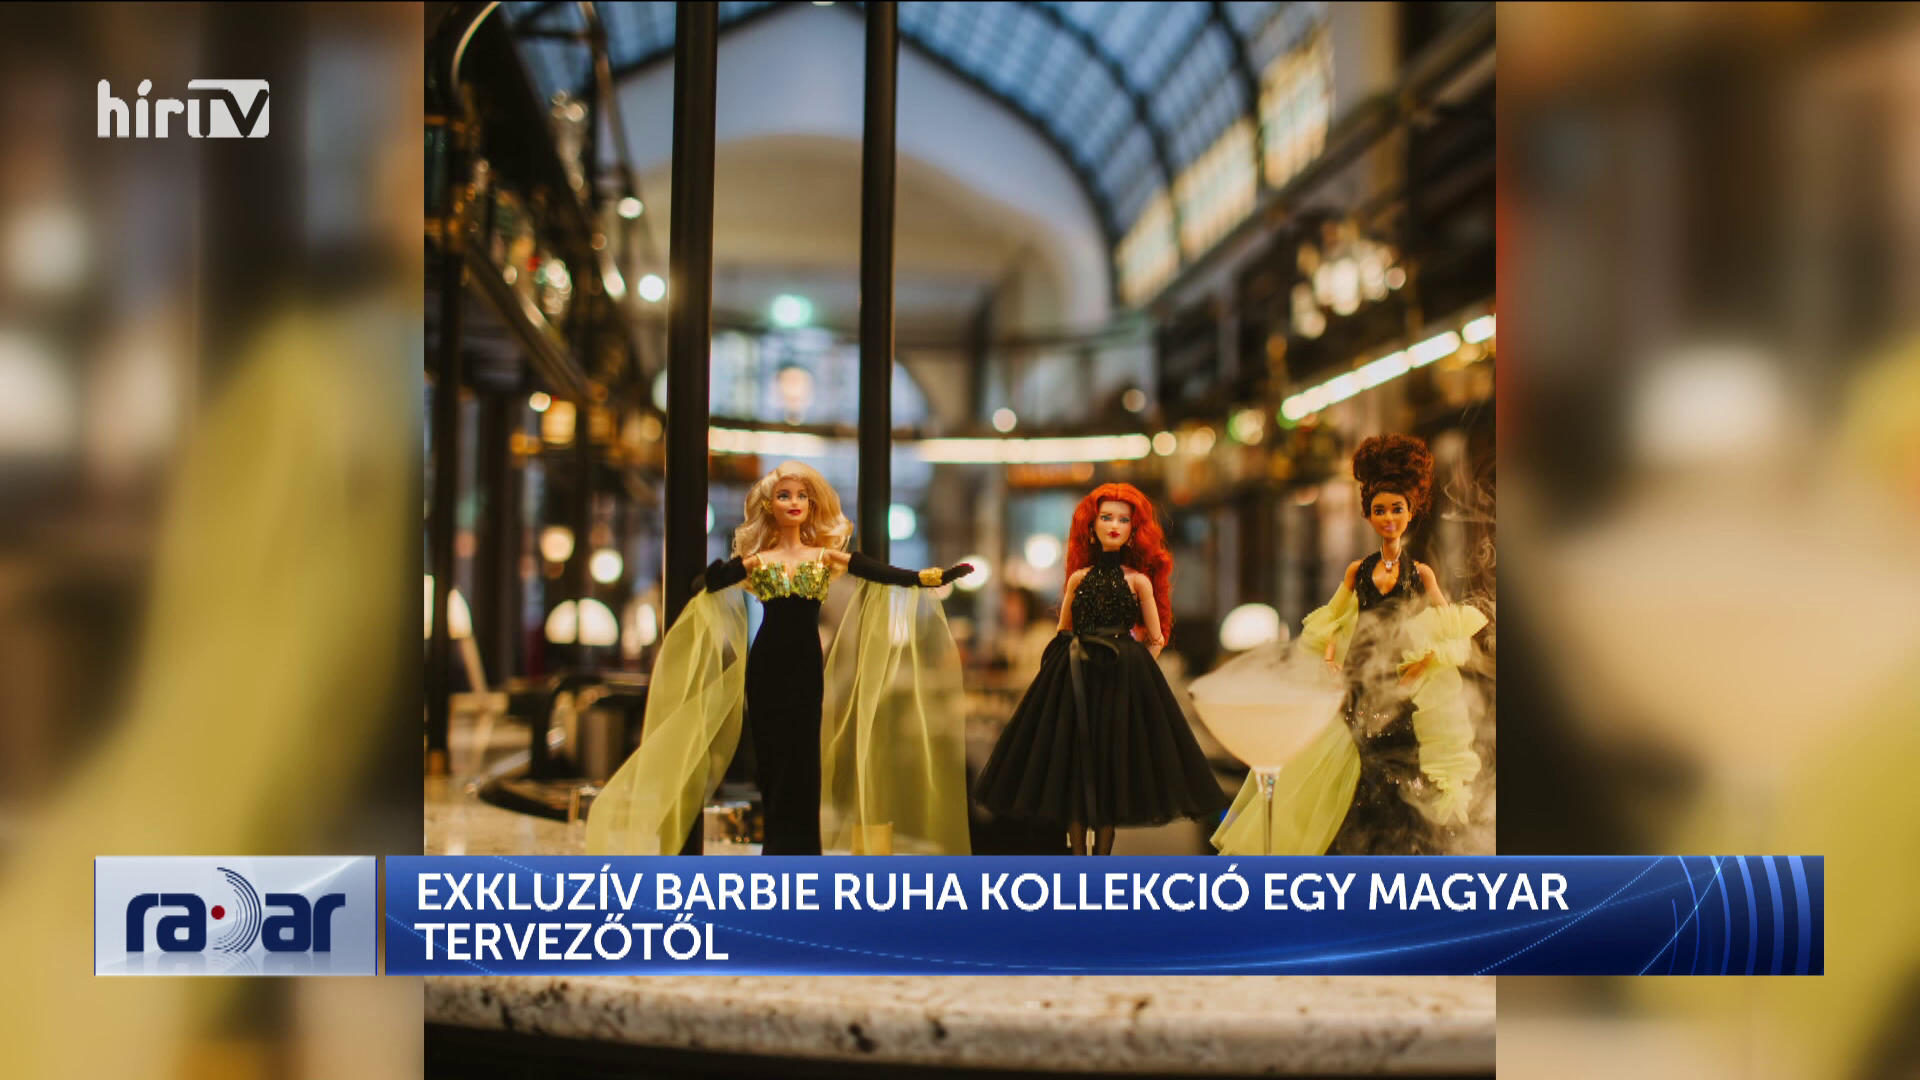 Radar – Exkluzív Barbie-ruha kollekció egy magyar tervezőtől + videó